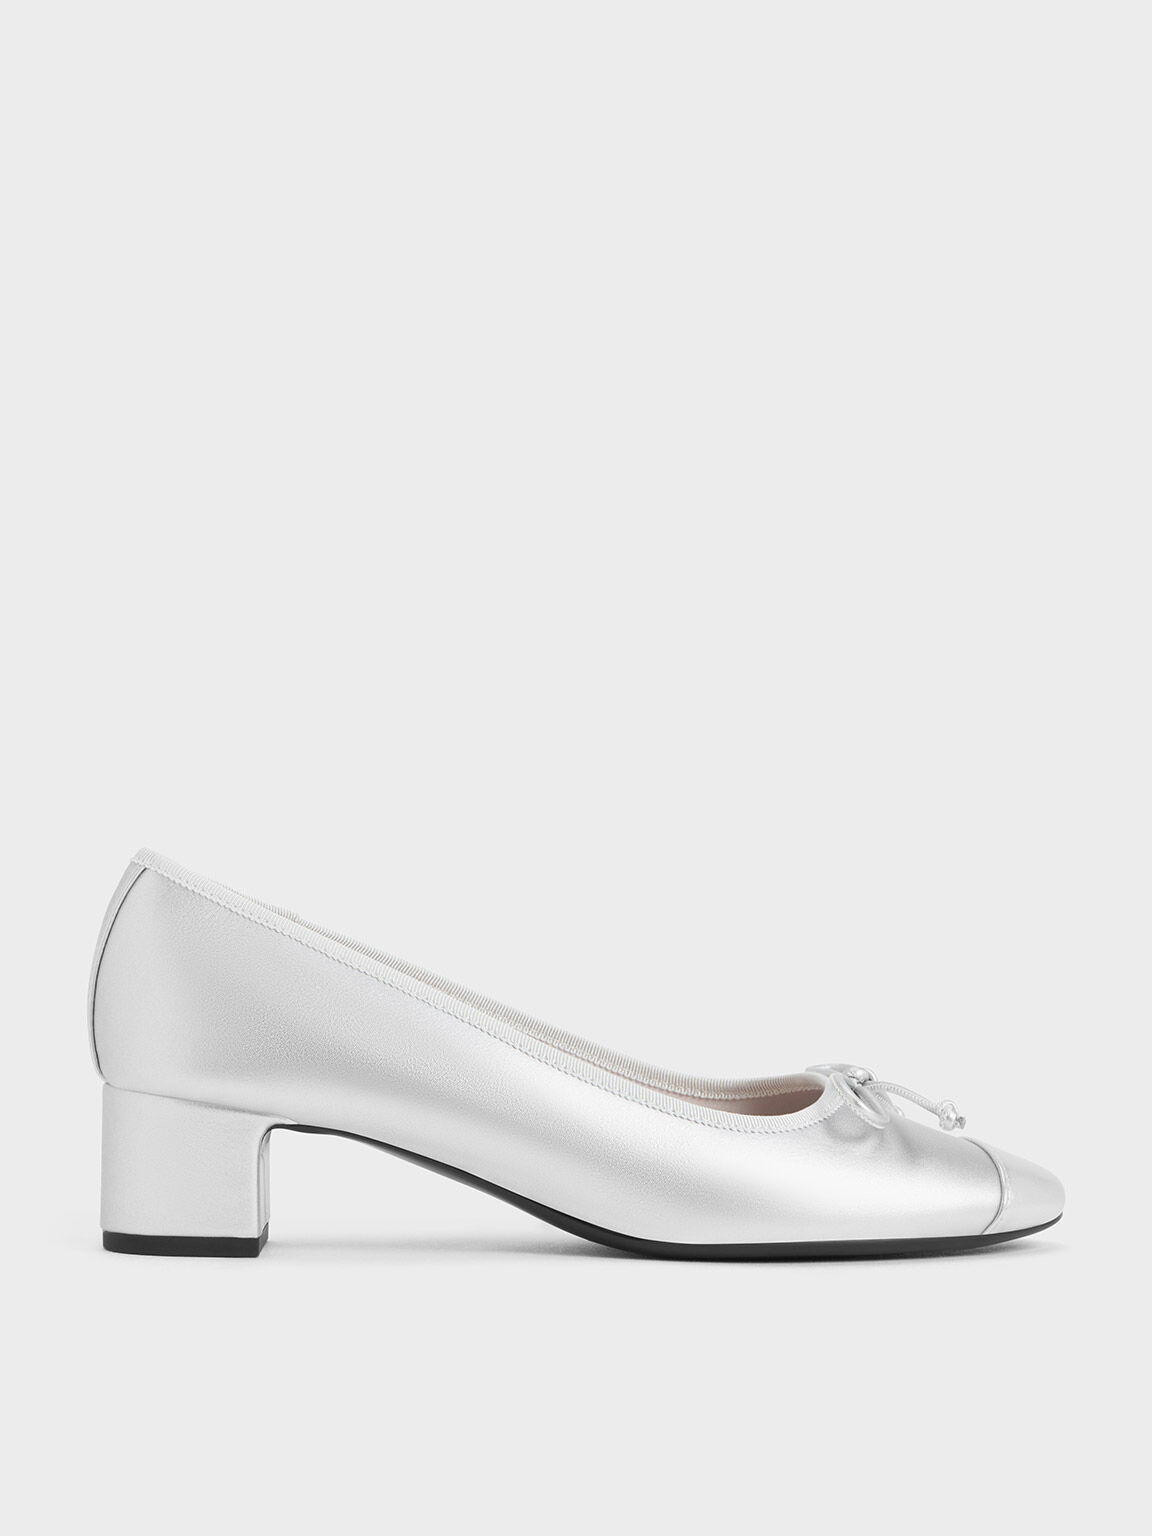 Silver Pumps & Court Shoes, Shop Online